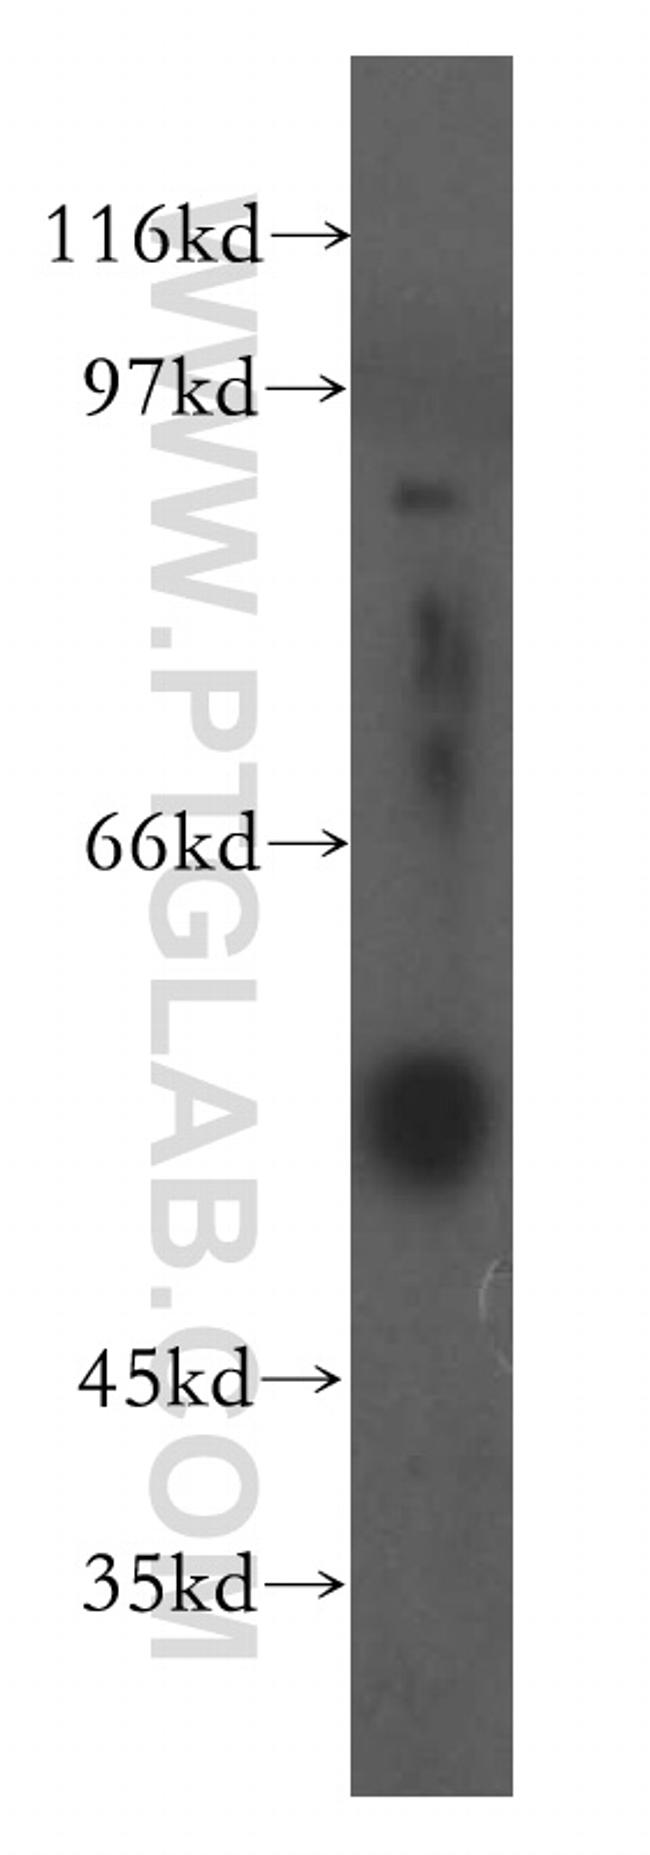 Fibrinogen gamma chain Antibody in Western Blot (WB)